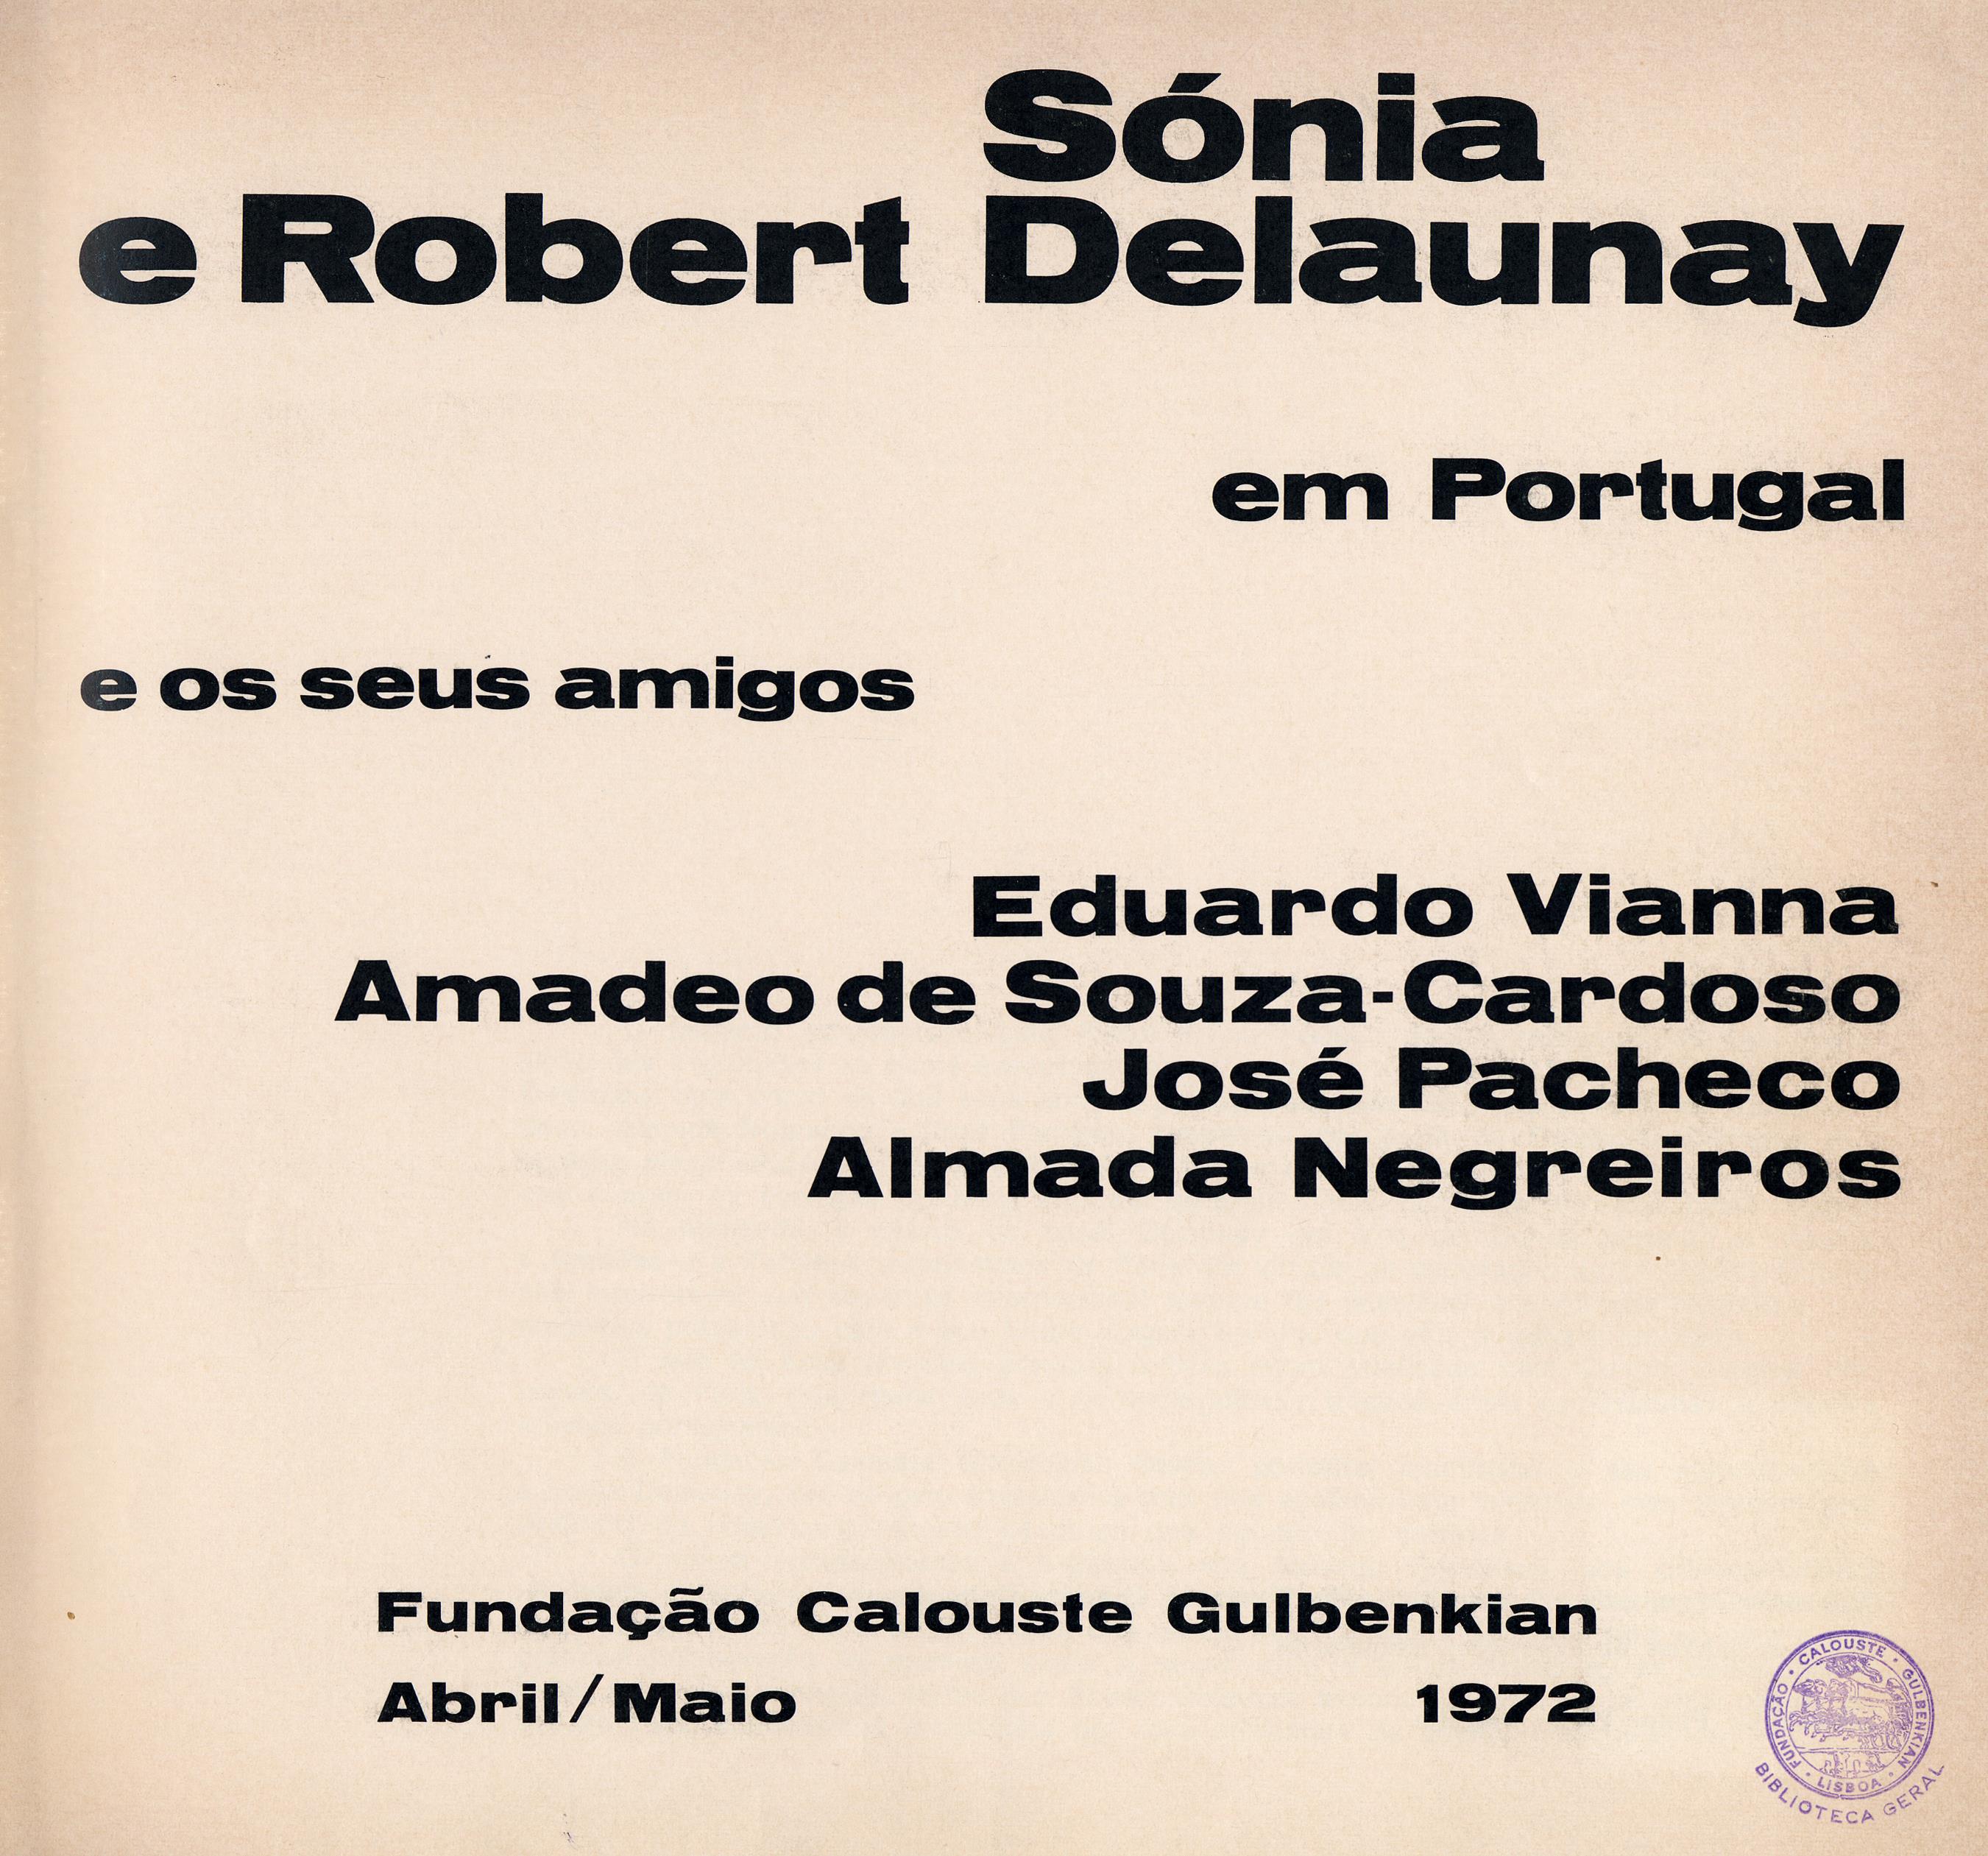 Sonia e Robert Delaunay em Portugal e os seus Amigos Eduardo Vianna, Amadeo de Souza-Cardoso, José Pacheco, Almada Negreiros